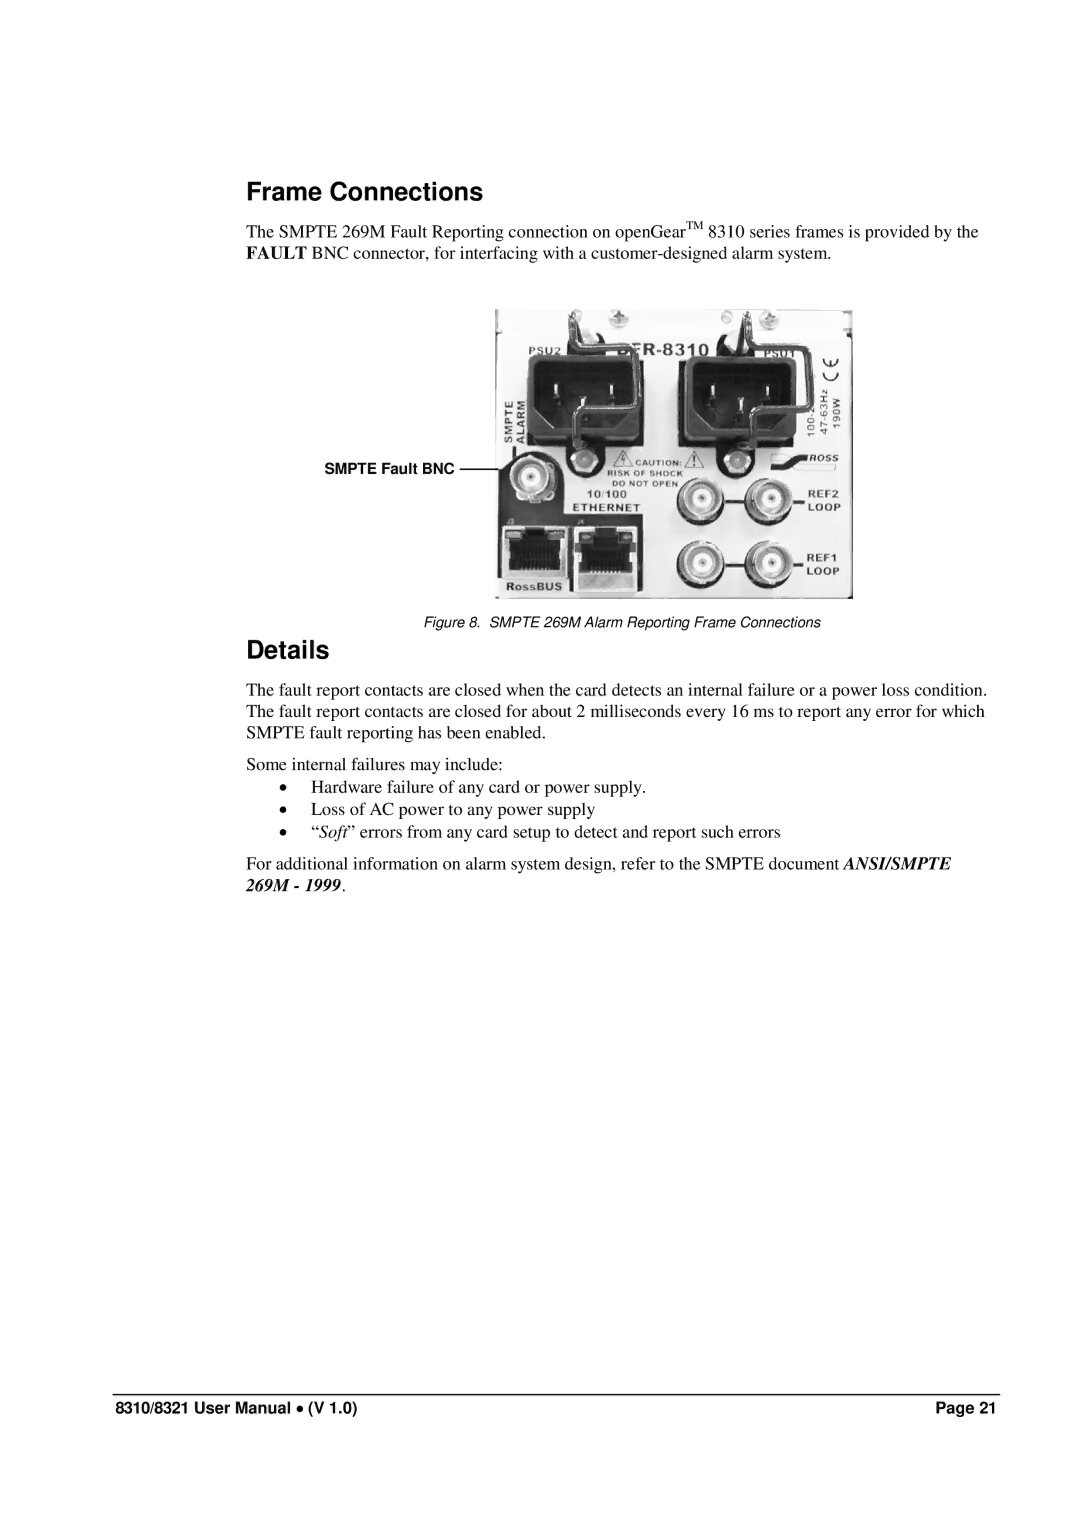 Cobalt Networks 8321(-C), 8310(-C) user manual Frame Connections, Details 